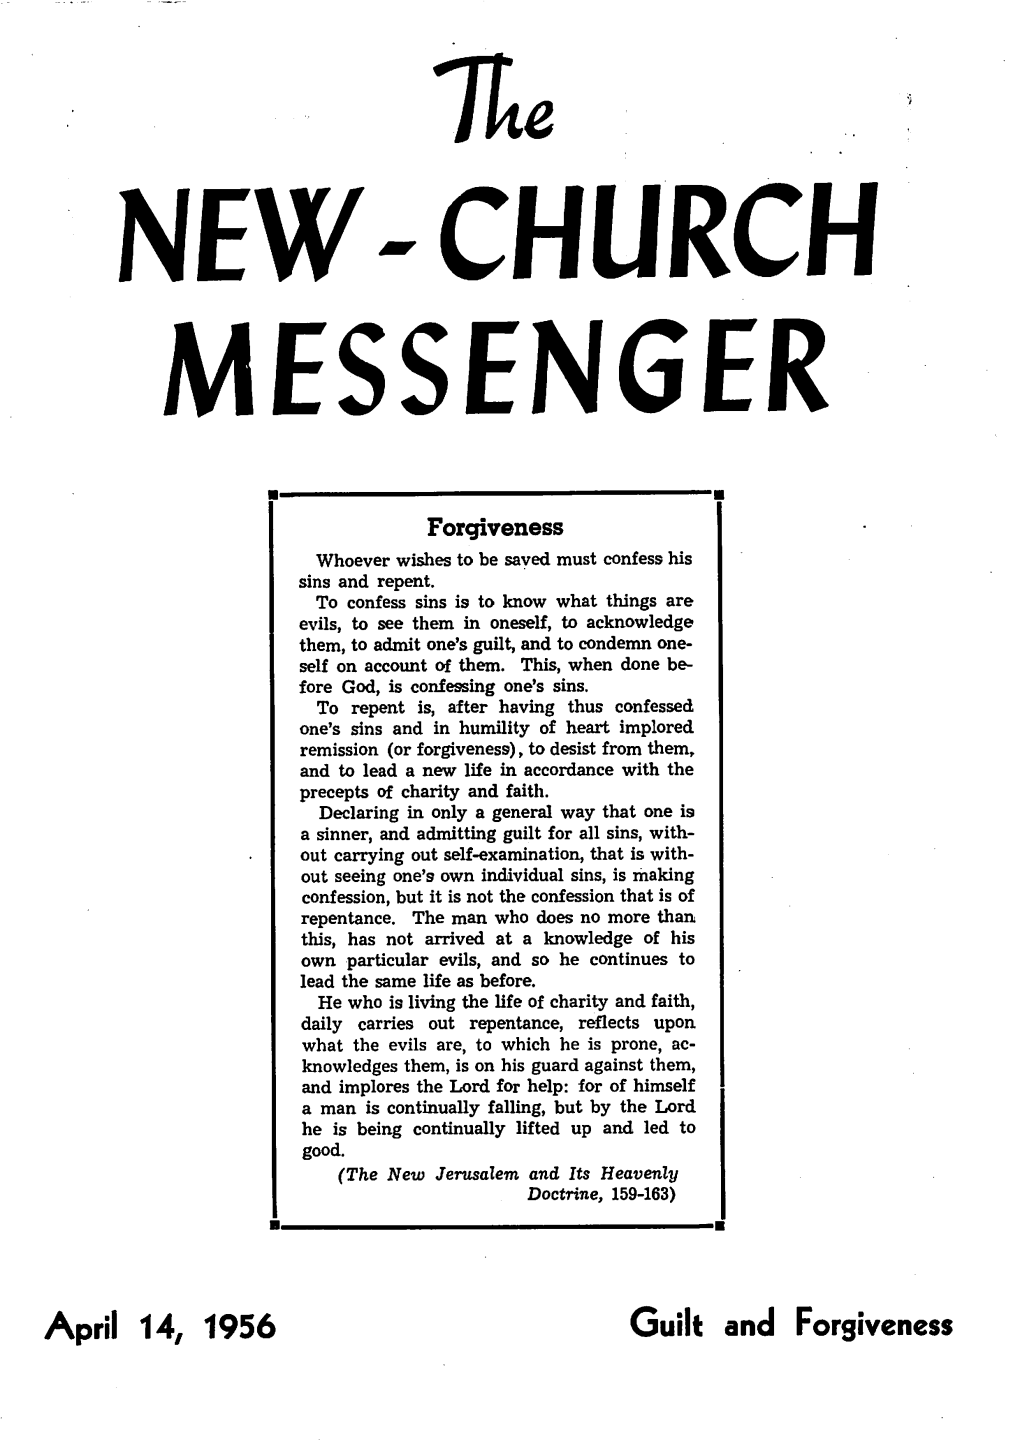 New-Church Messenger